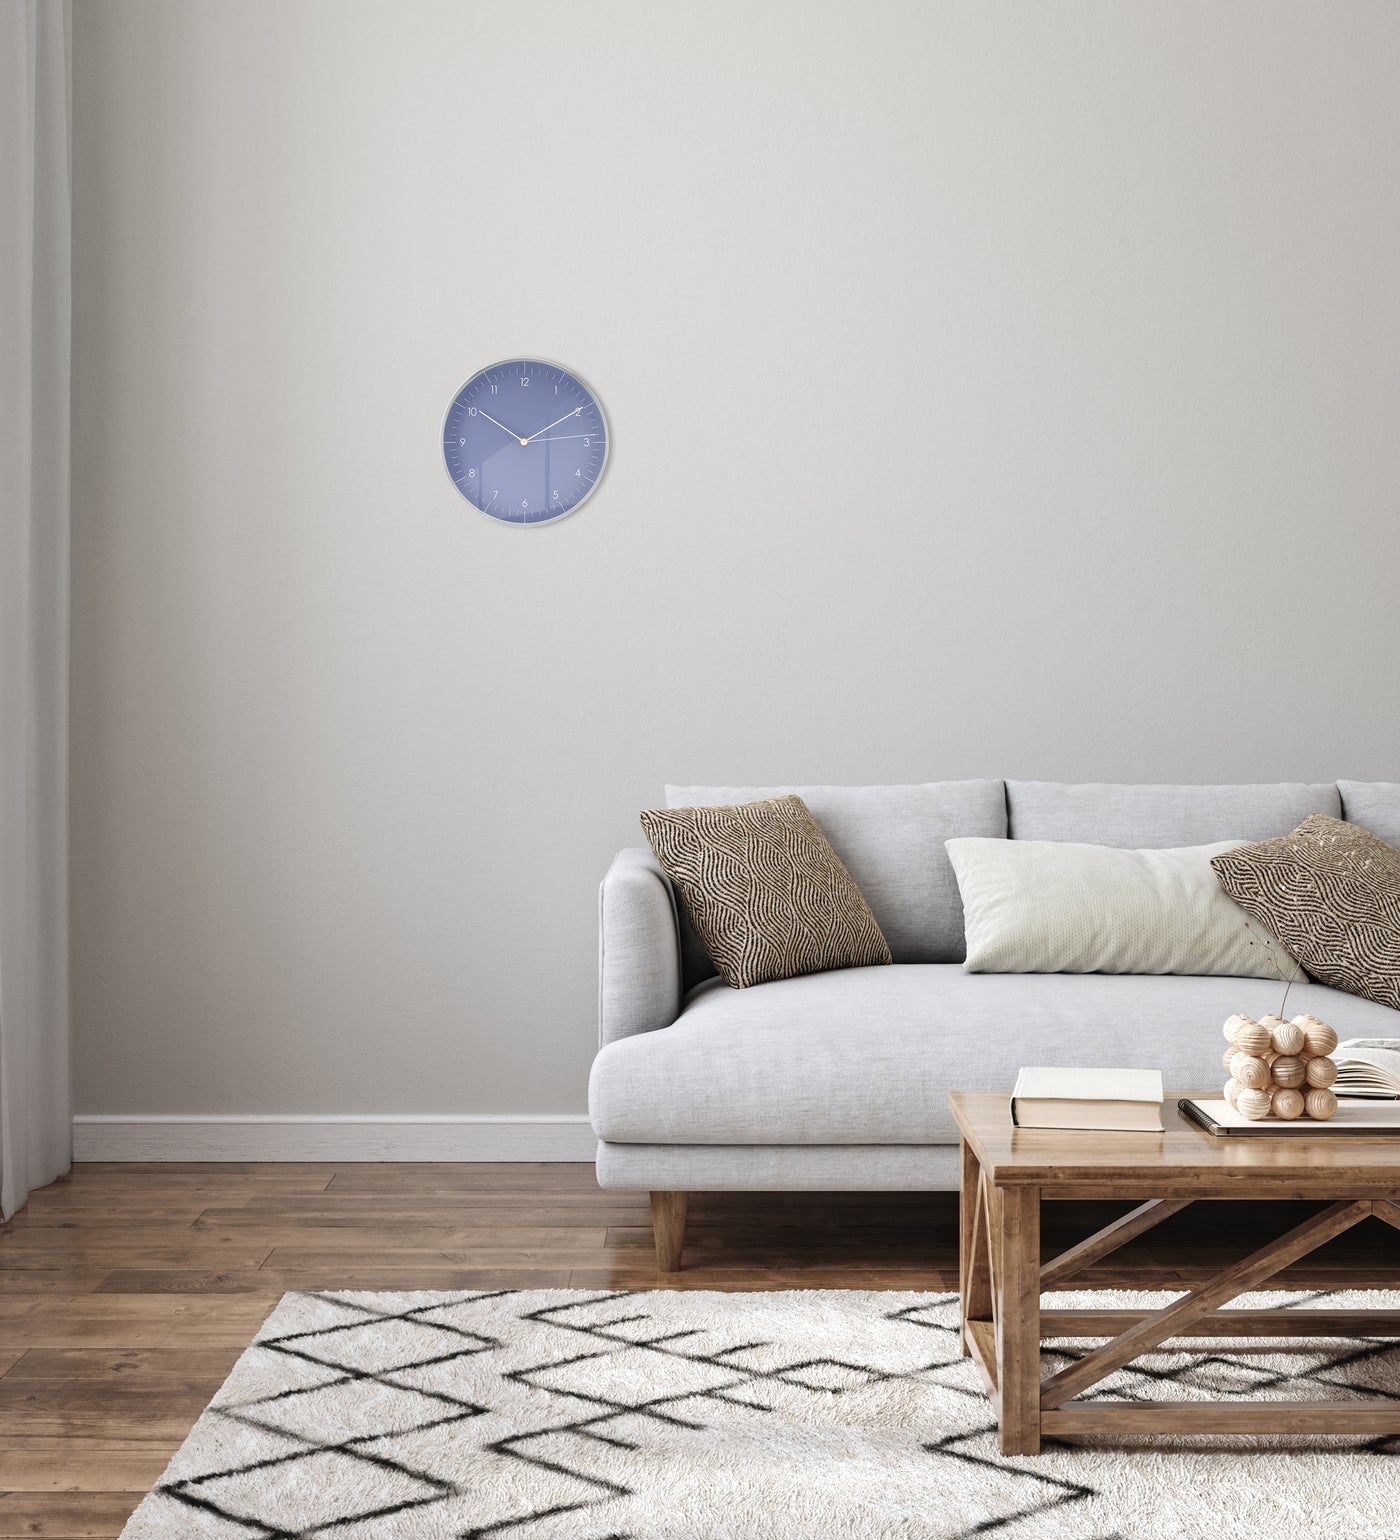 Wanduhr in Hellblau und Silber hängt im Wohnzimmer über grauer Couch